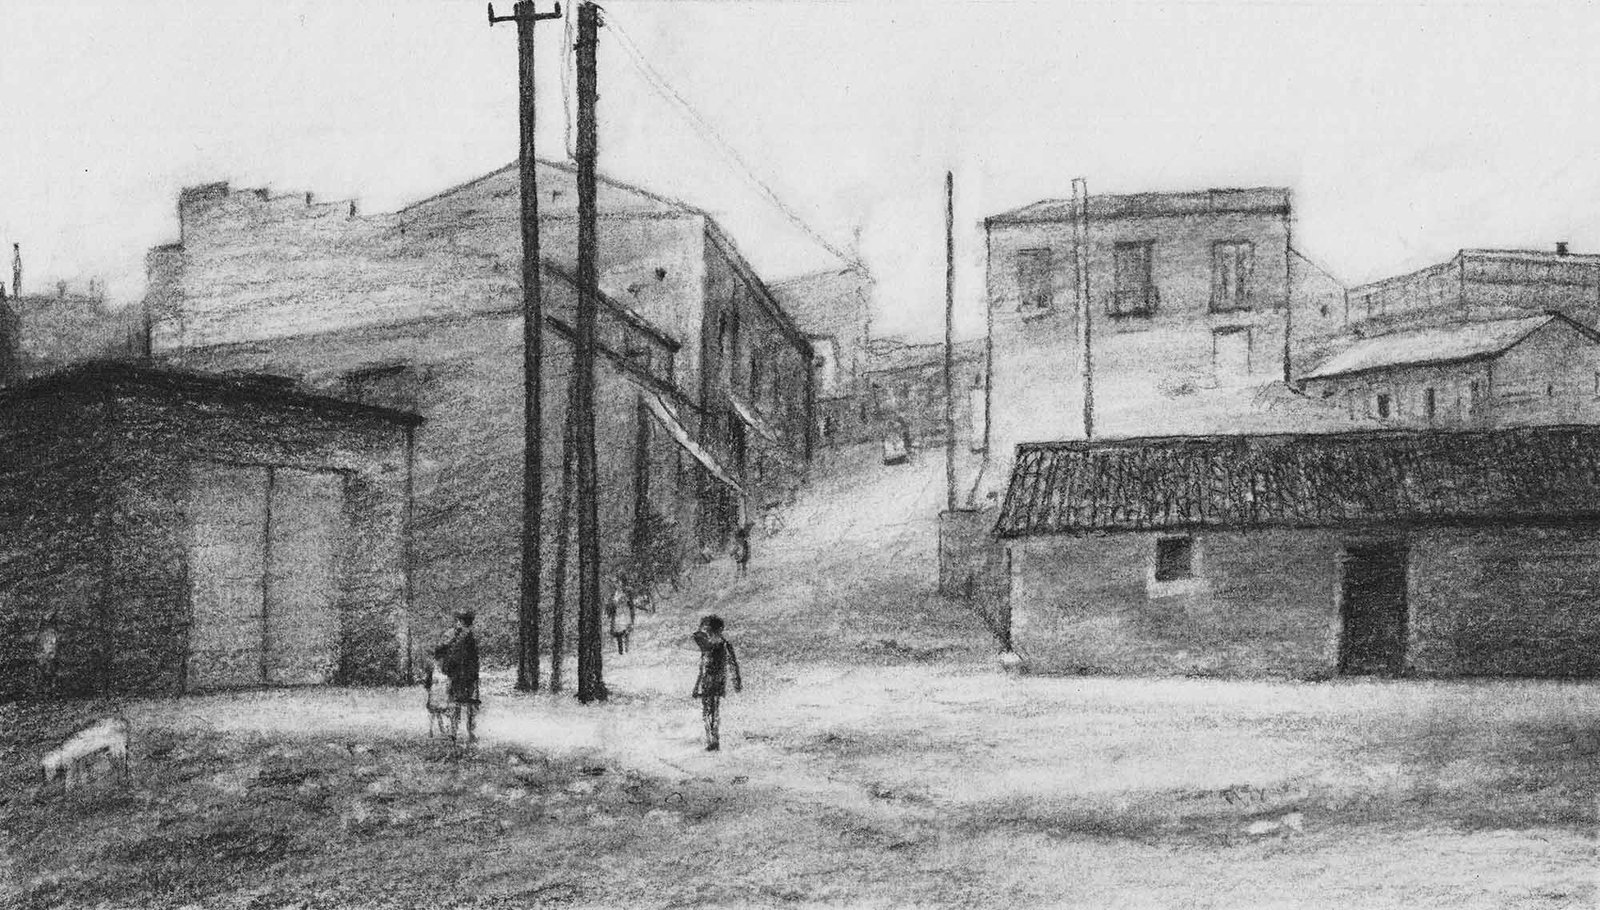 Barrio de las Peñuelas. Charcoal on paper, by Mario Jodra.